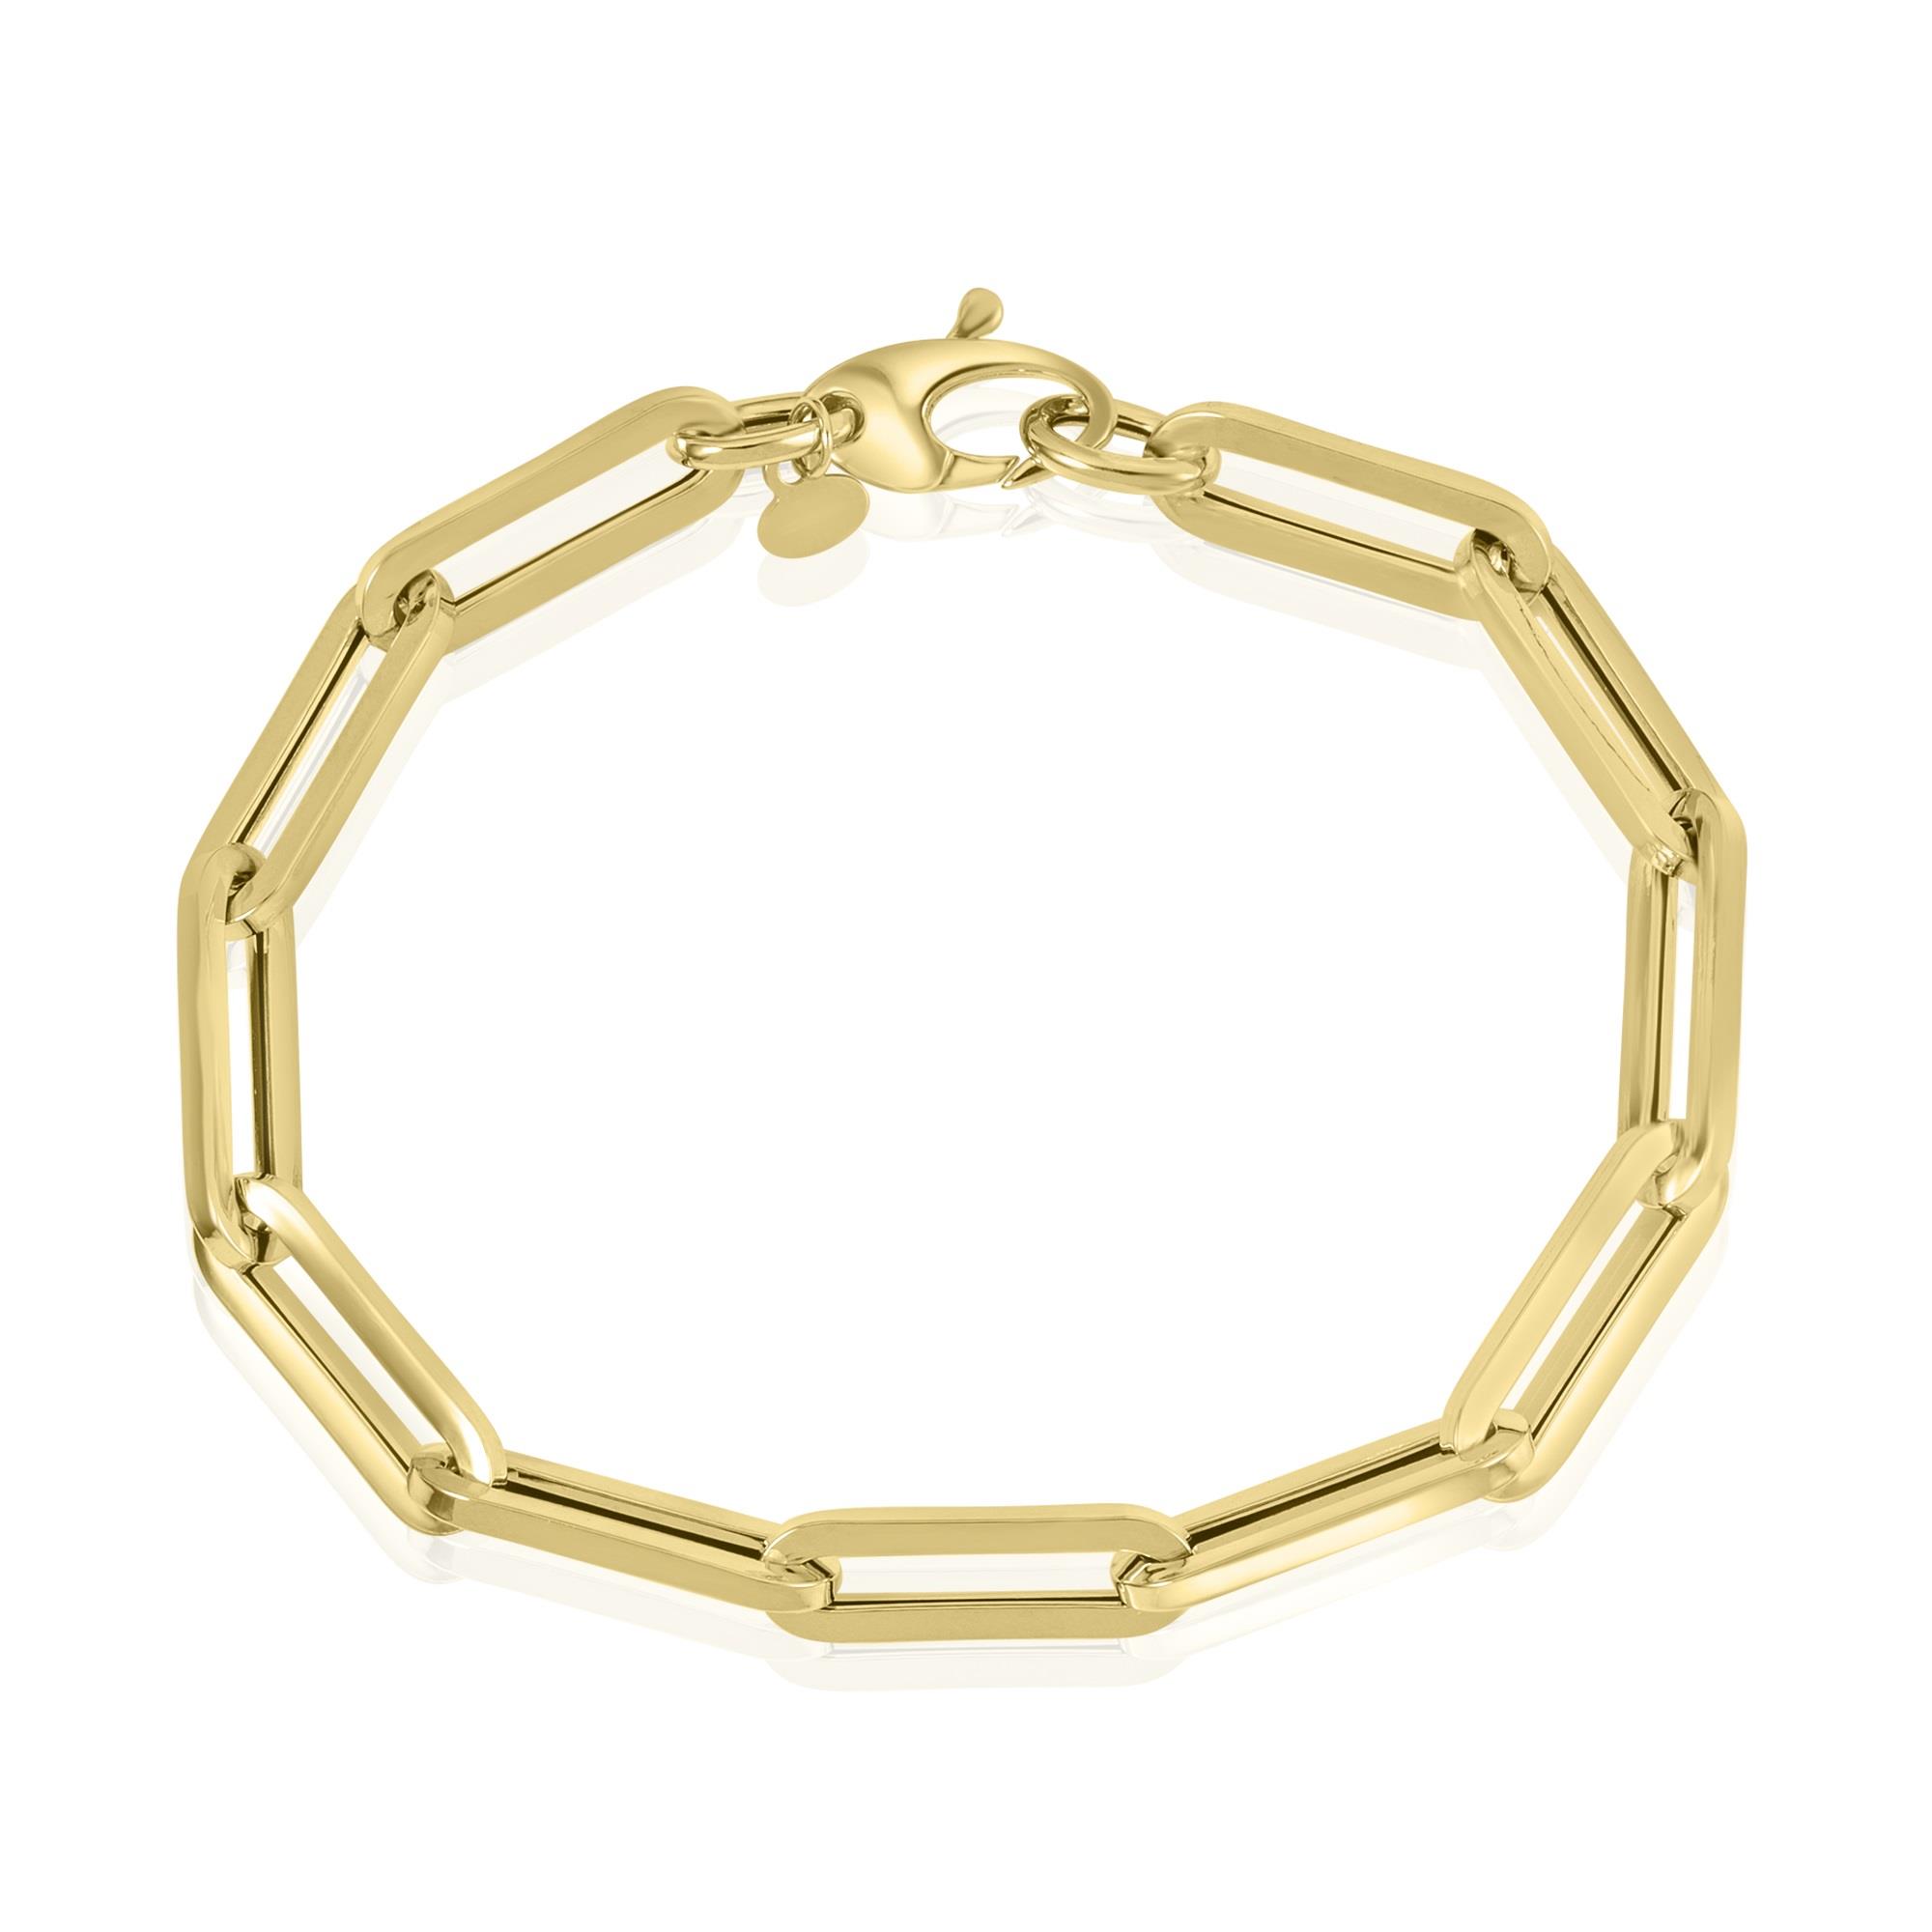 18ct Gold Paperlink Bracelet 19cm | Pravins